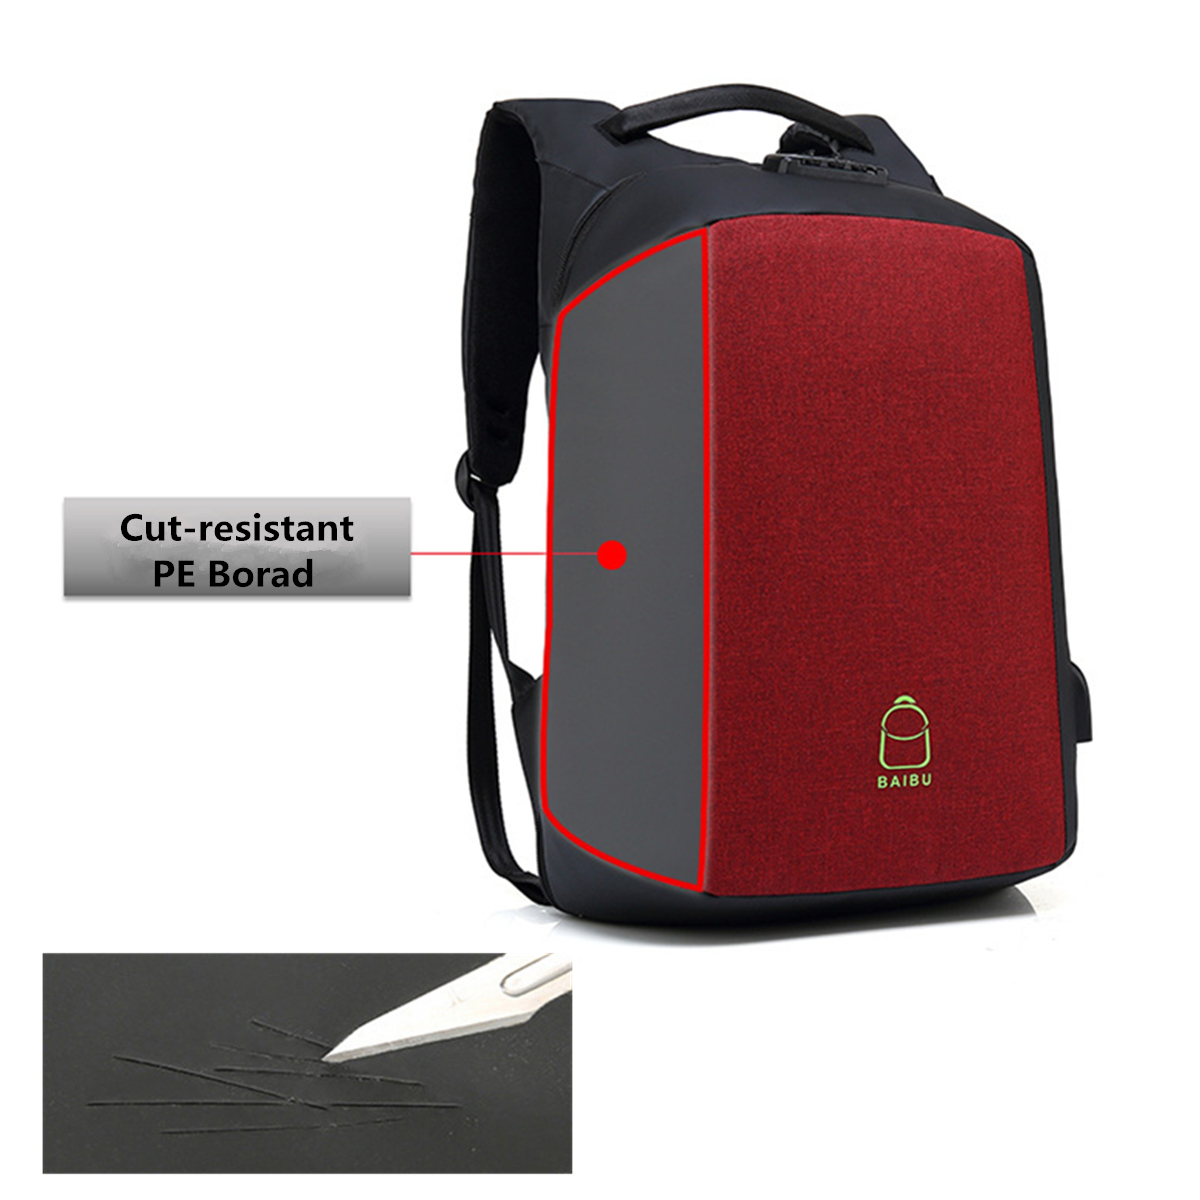 156-Inch-Laptop-Backpack-Bag-Travel-Bag-Student-Bag-With-External-USB-Charging-Port-1288885-4